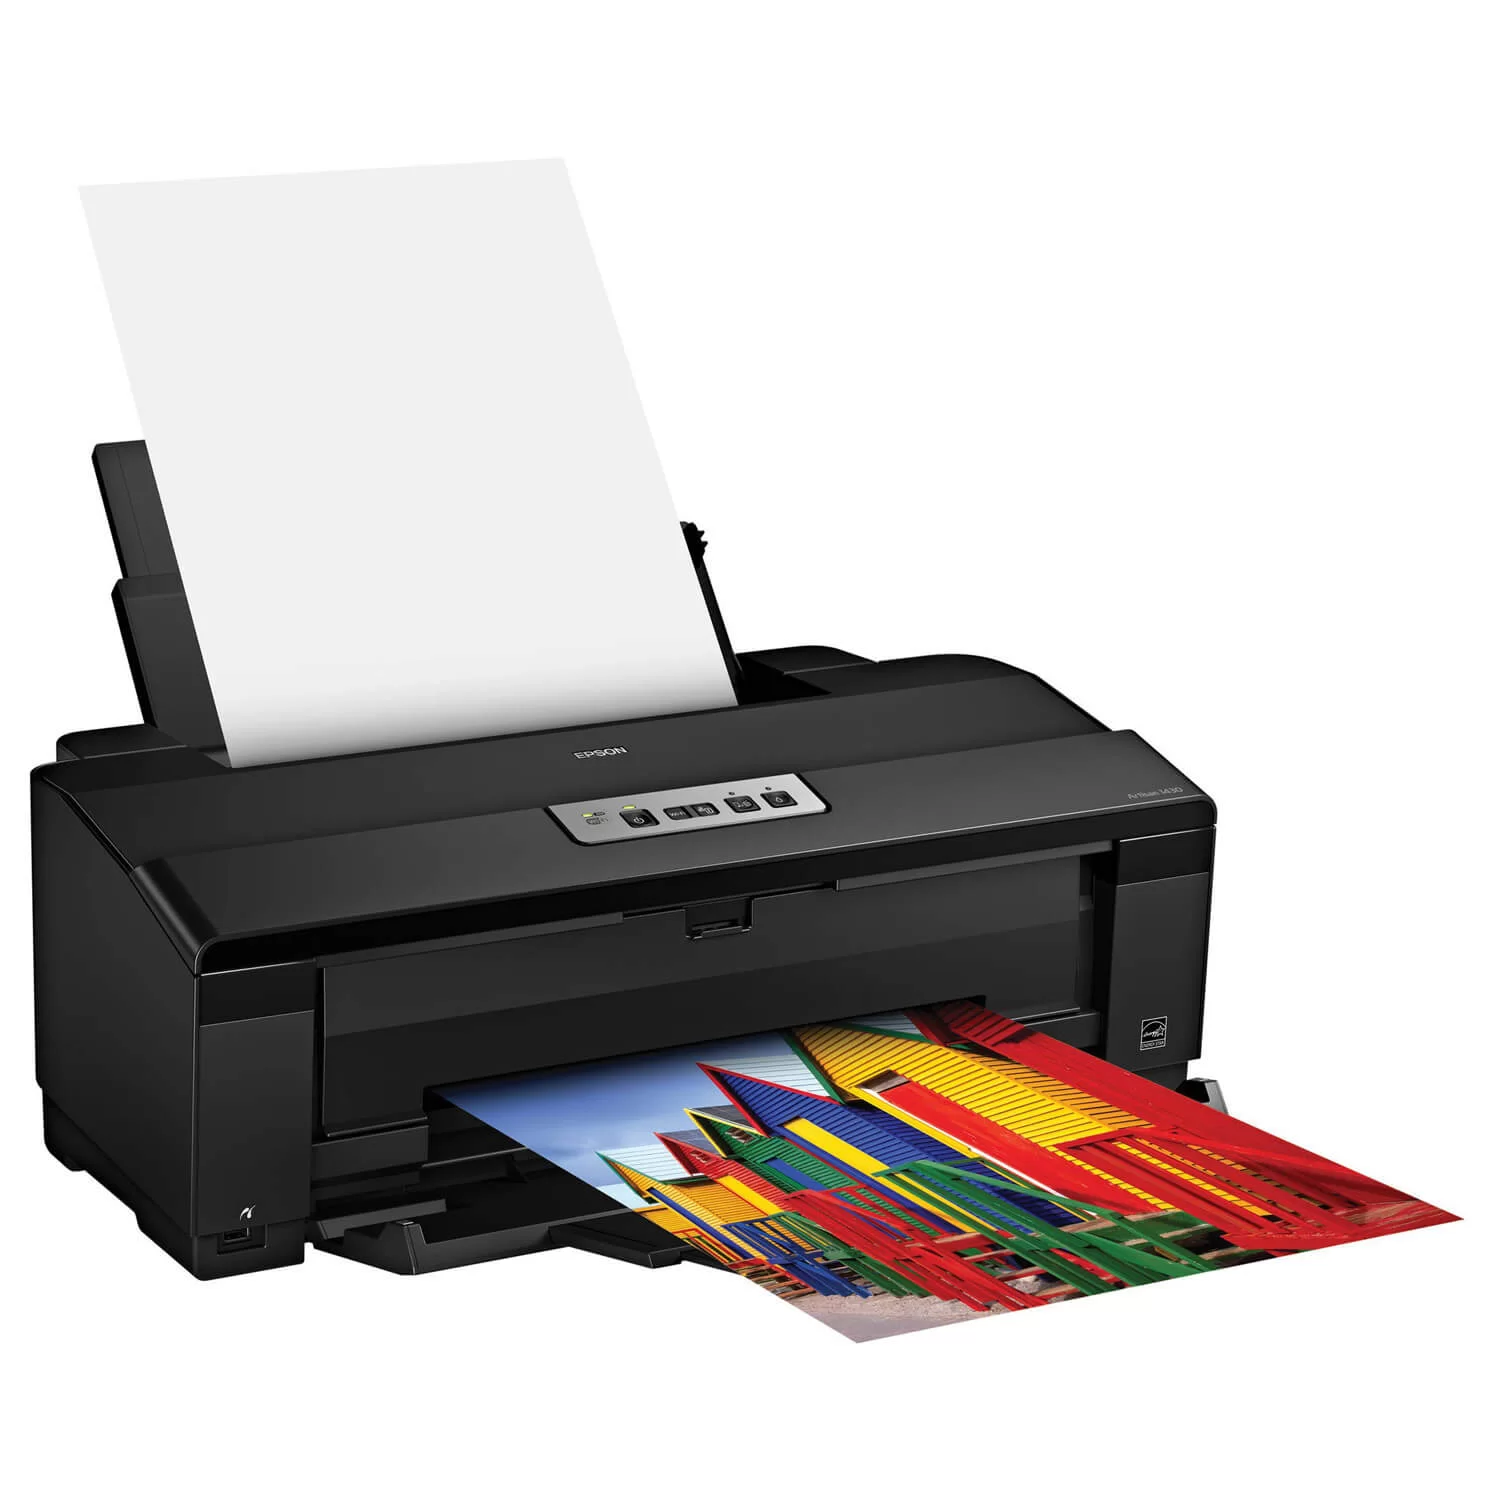 چاپگر (Printer) یک واحد خروجی است، اطلاعات موجود در رایانه توسط این قسمت بر روی کاغذ چاپ میشوند .